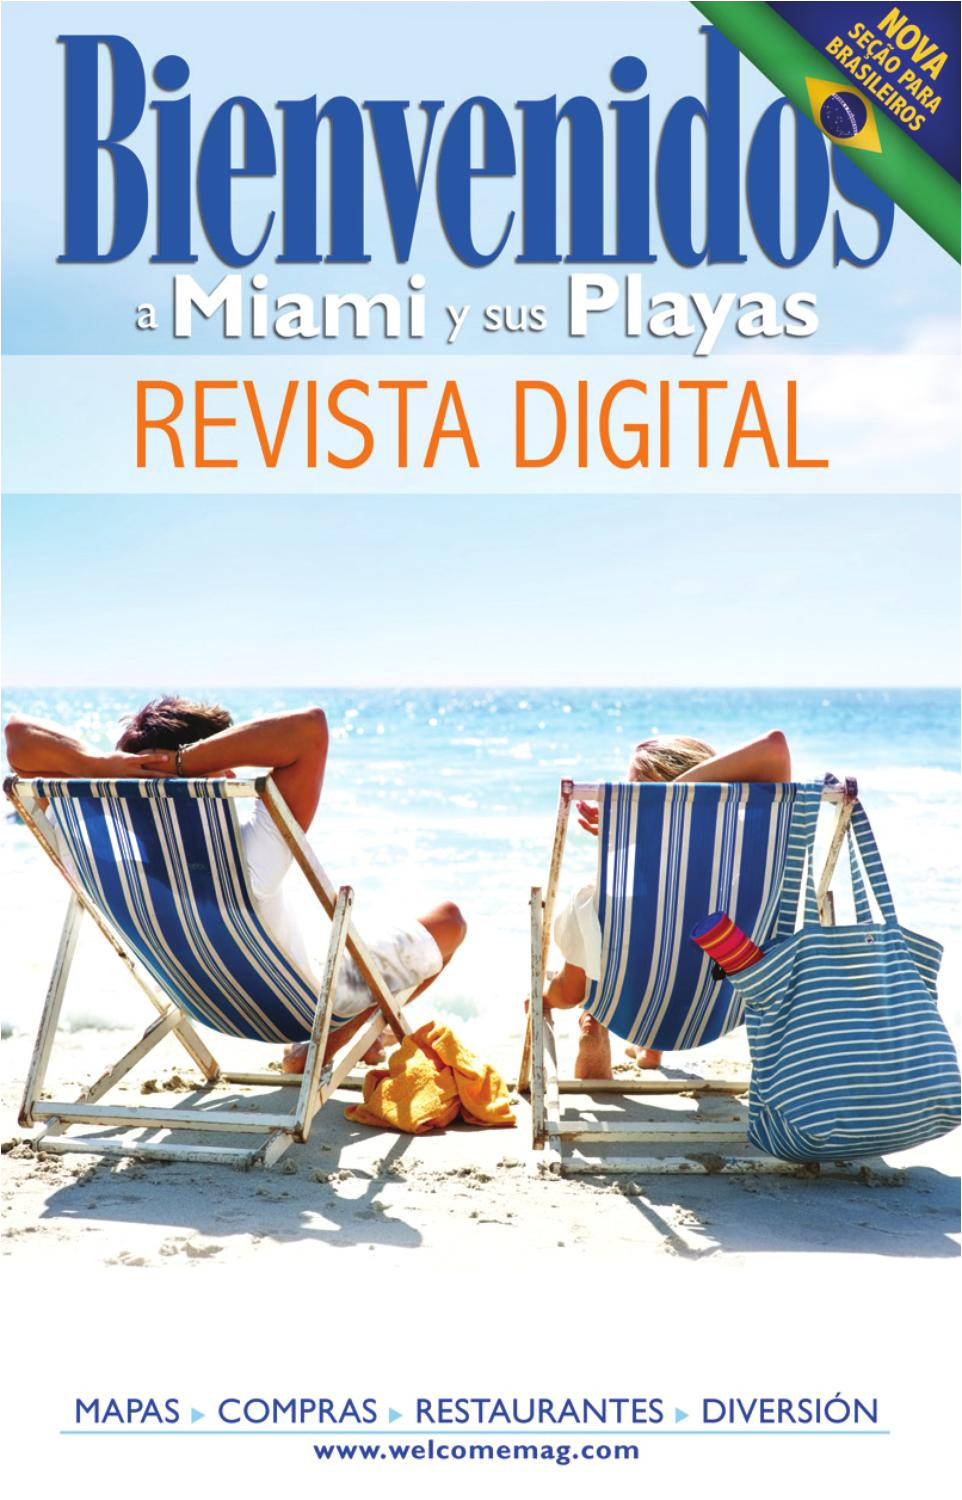 Venta De Casas En Kendall Miami Con Piscina Spanish Version by Welcome Mag issuu